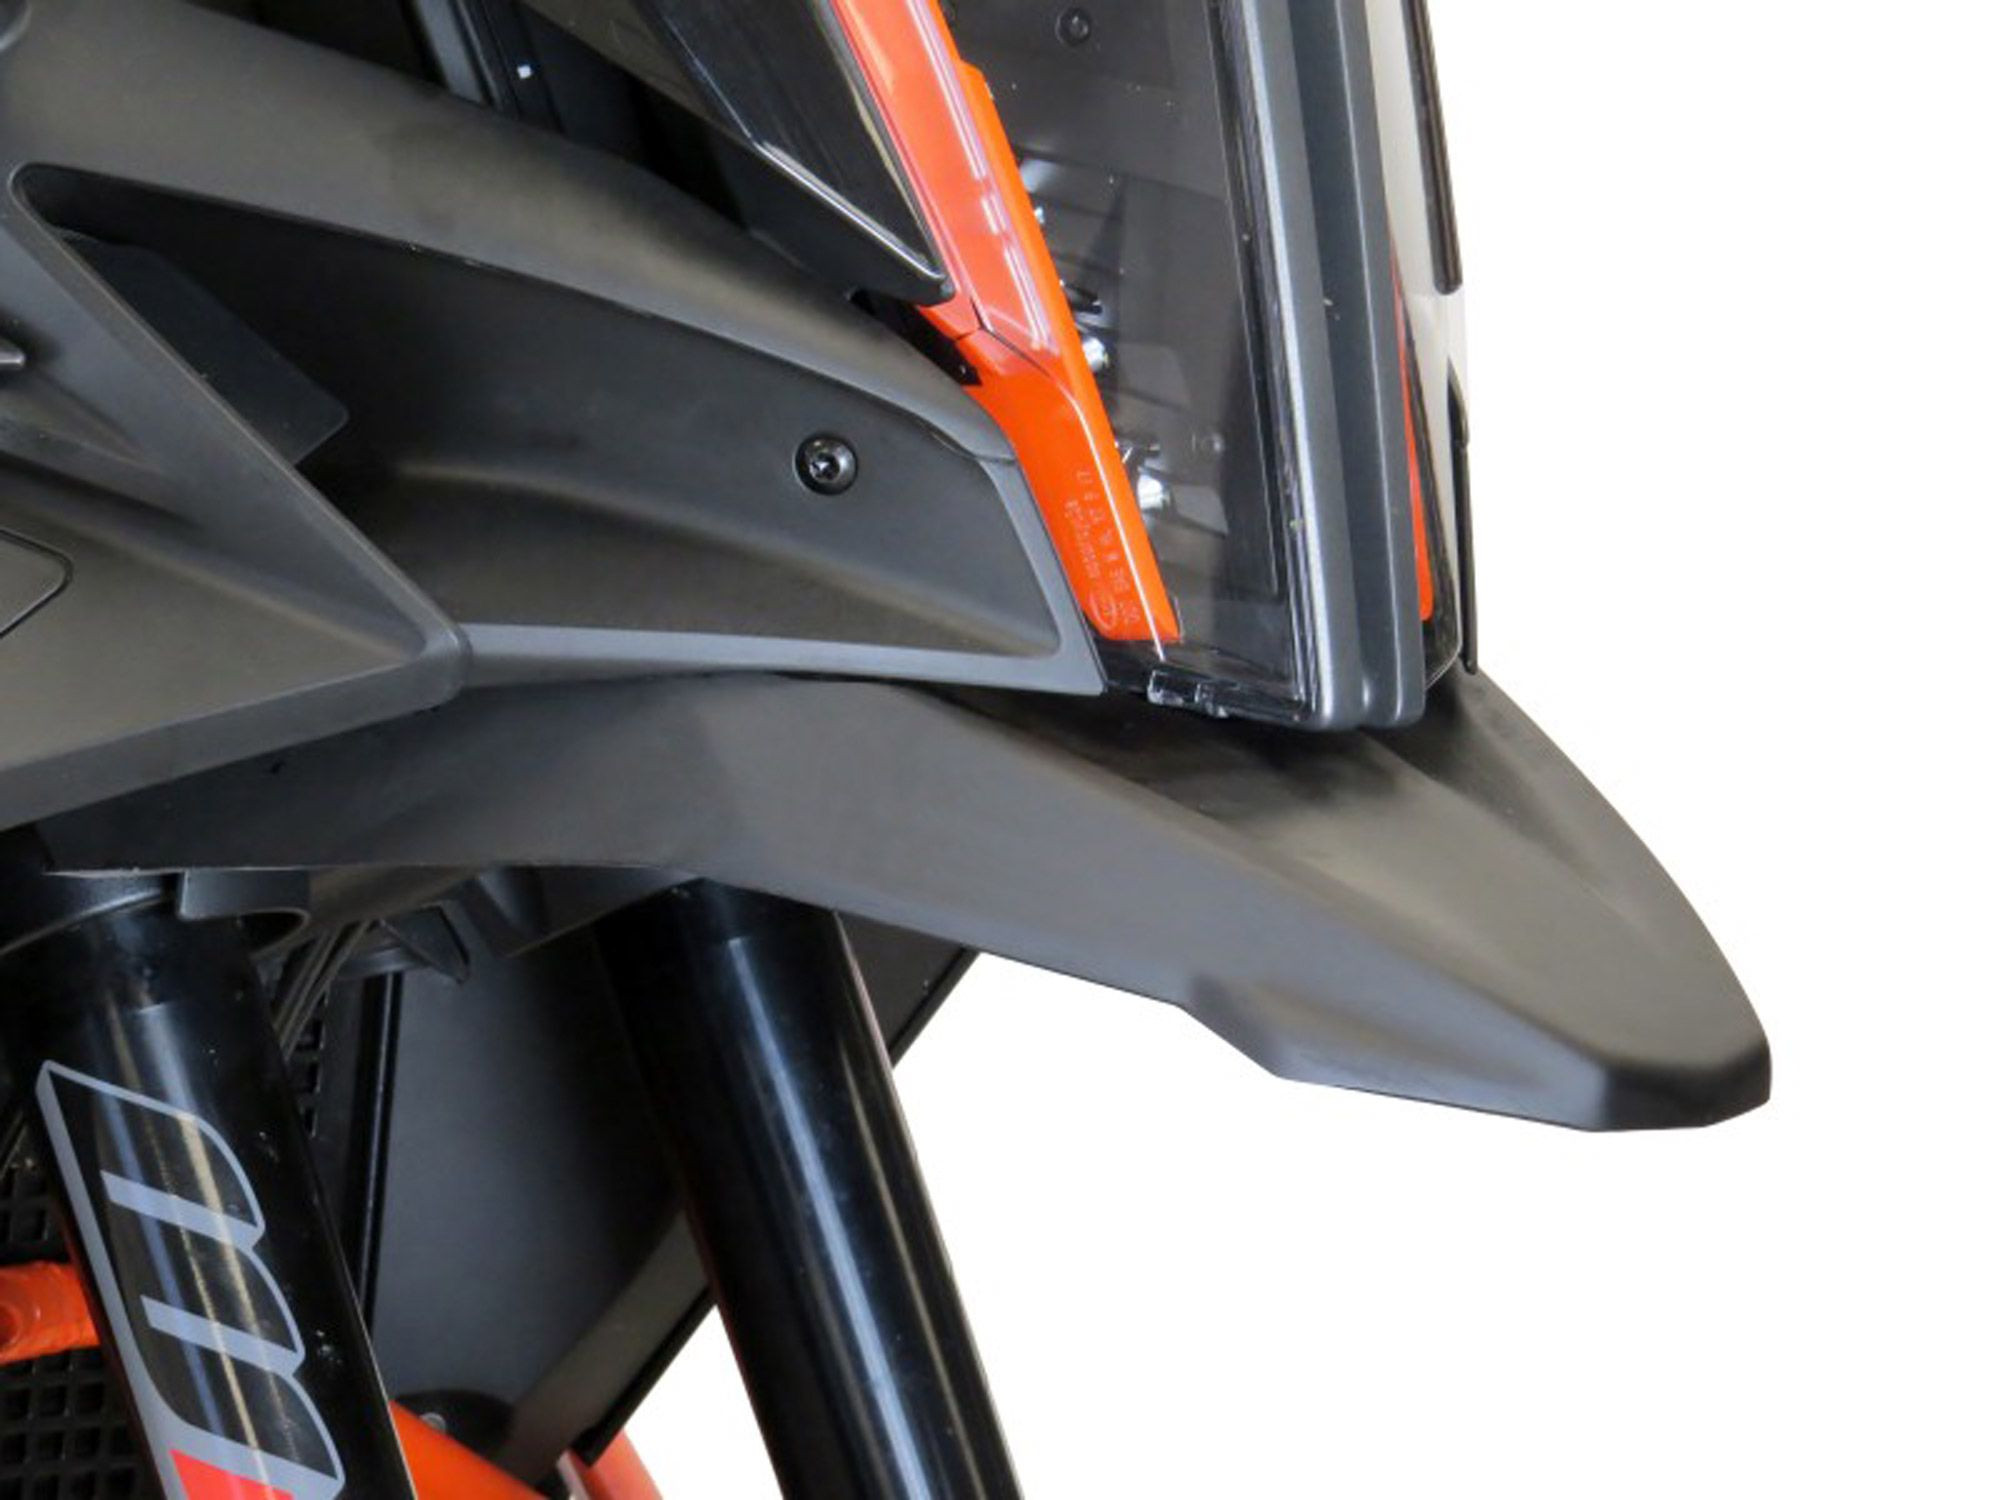 BODYSTYLE Schnabelverlängerung schwarz-matt passt für KTM 1290 Super Adventure